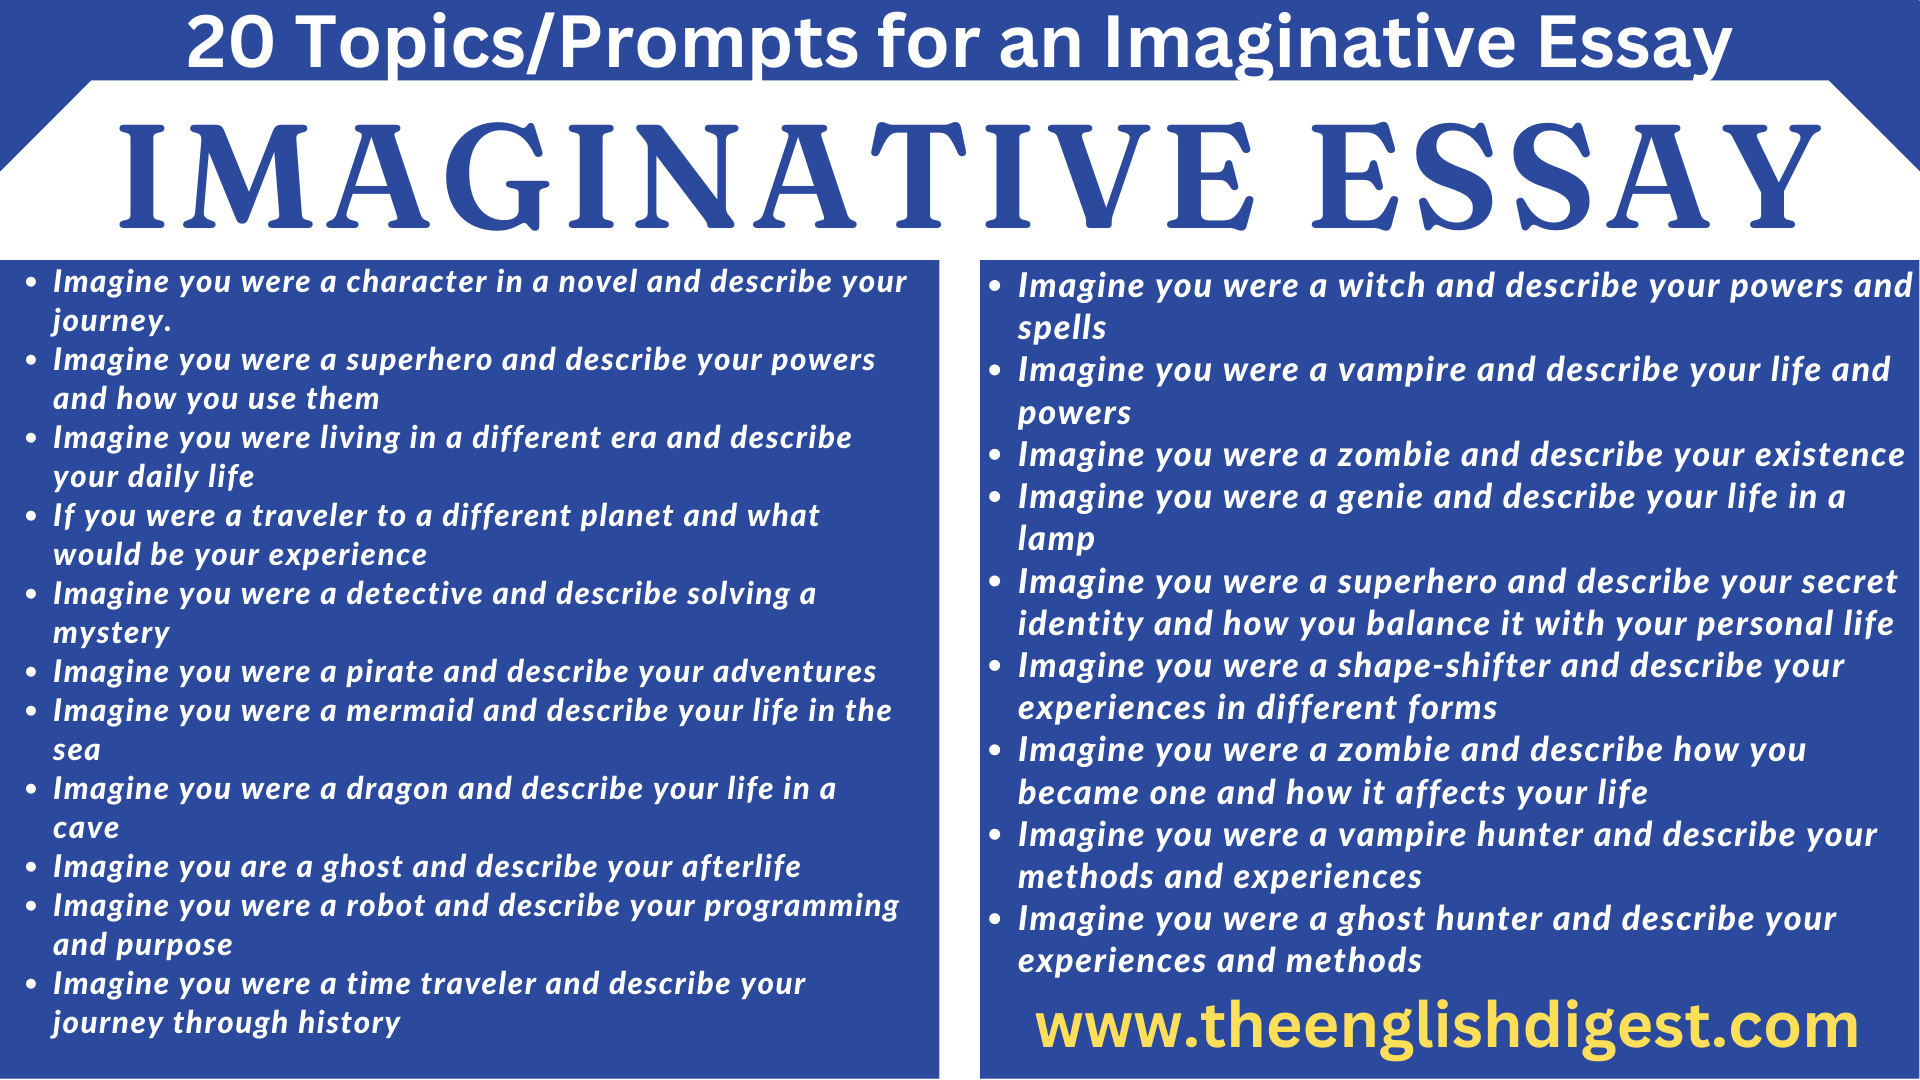 topics of imaginative essay